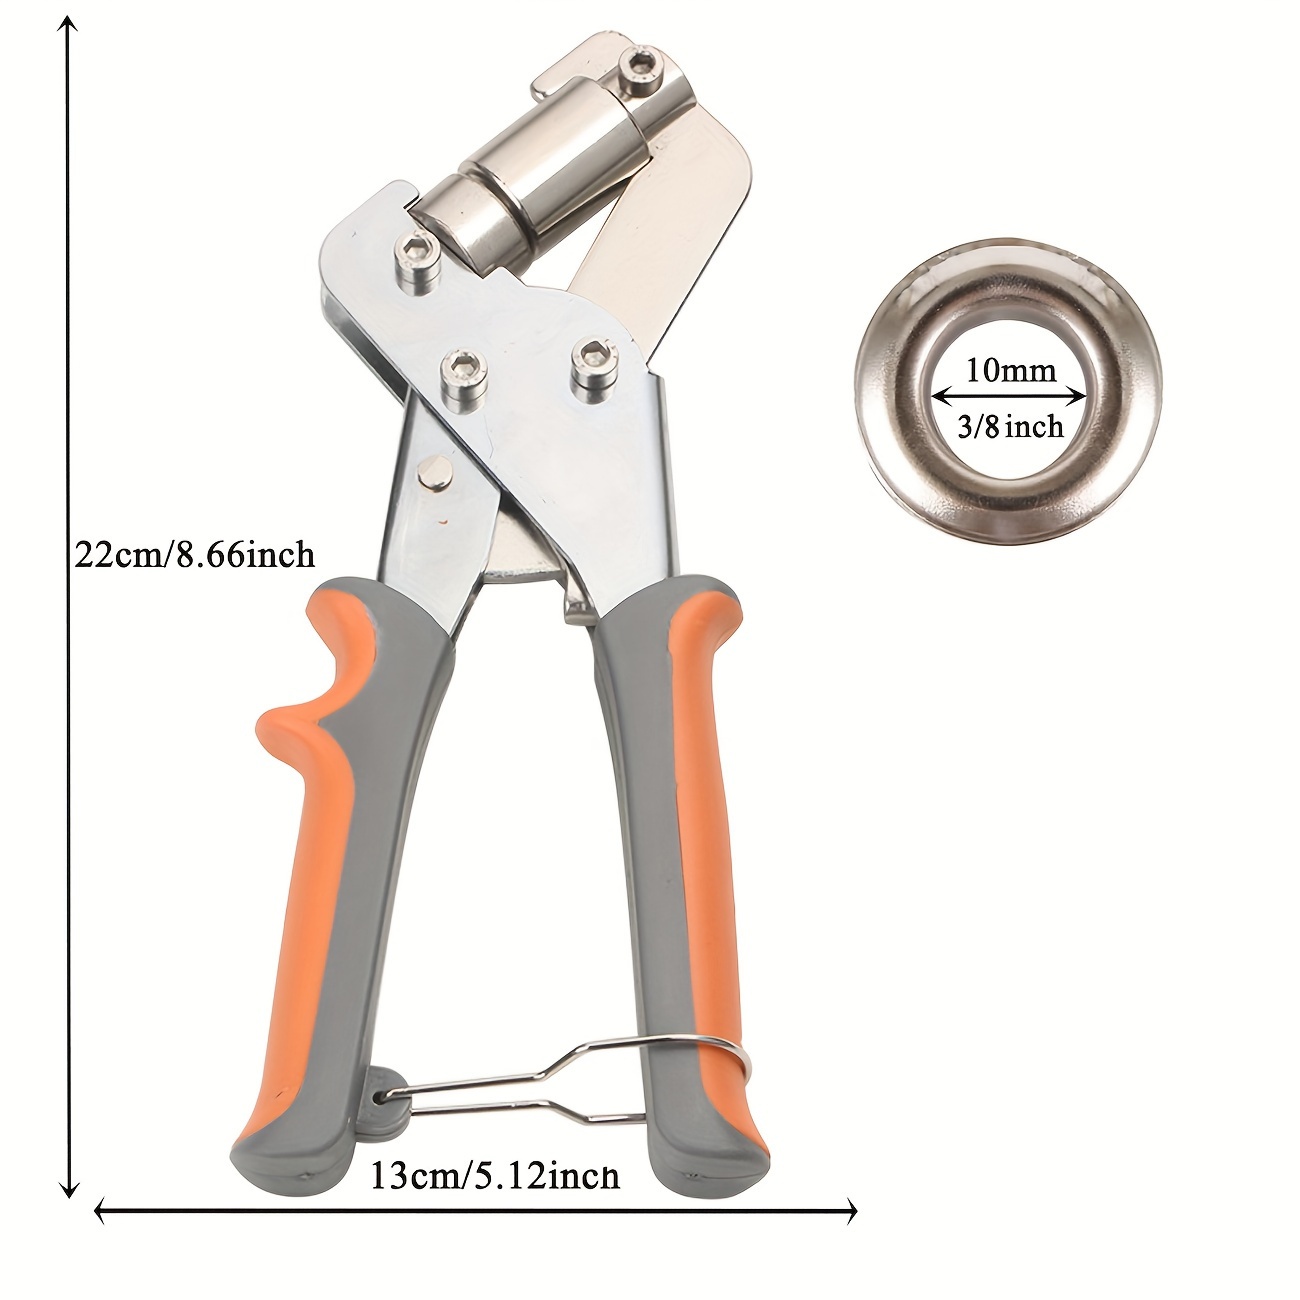 Grommet Tool Kit, 3/8in Manual Eyelet Punch Press Pliers Handheld